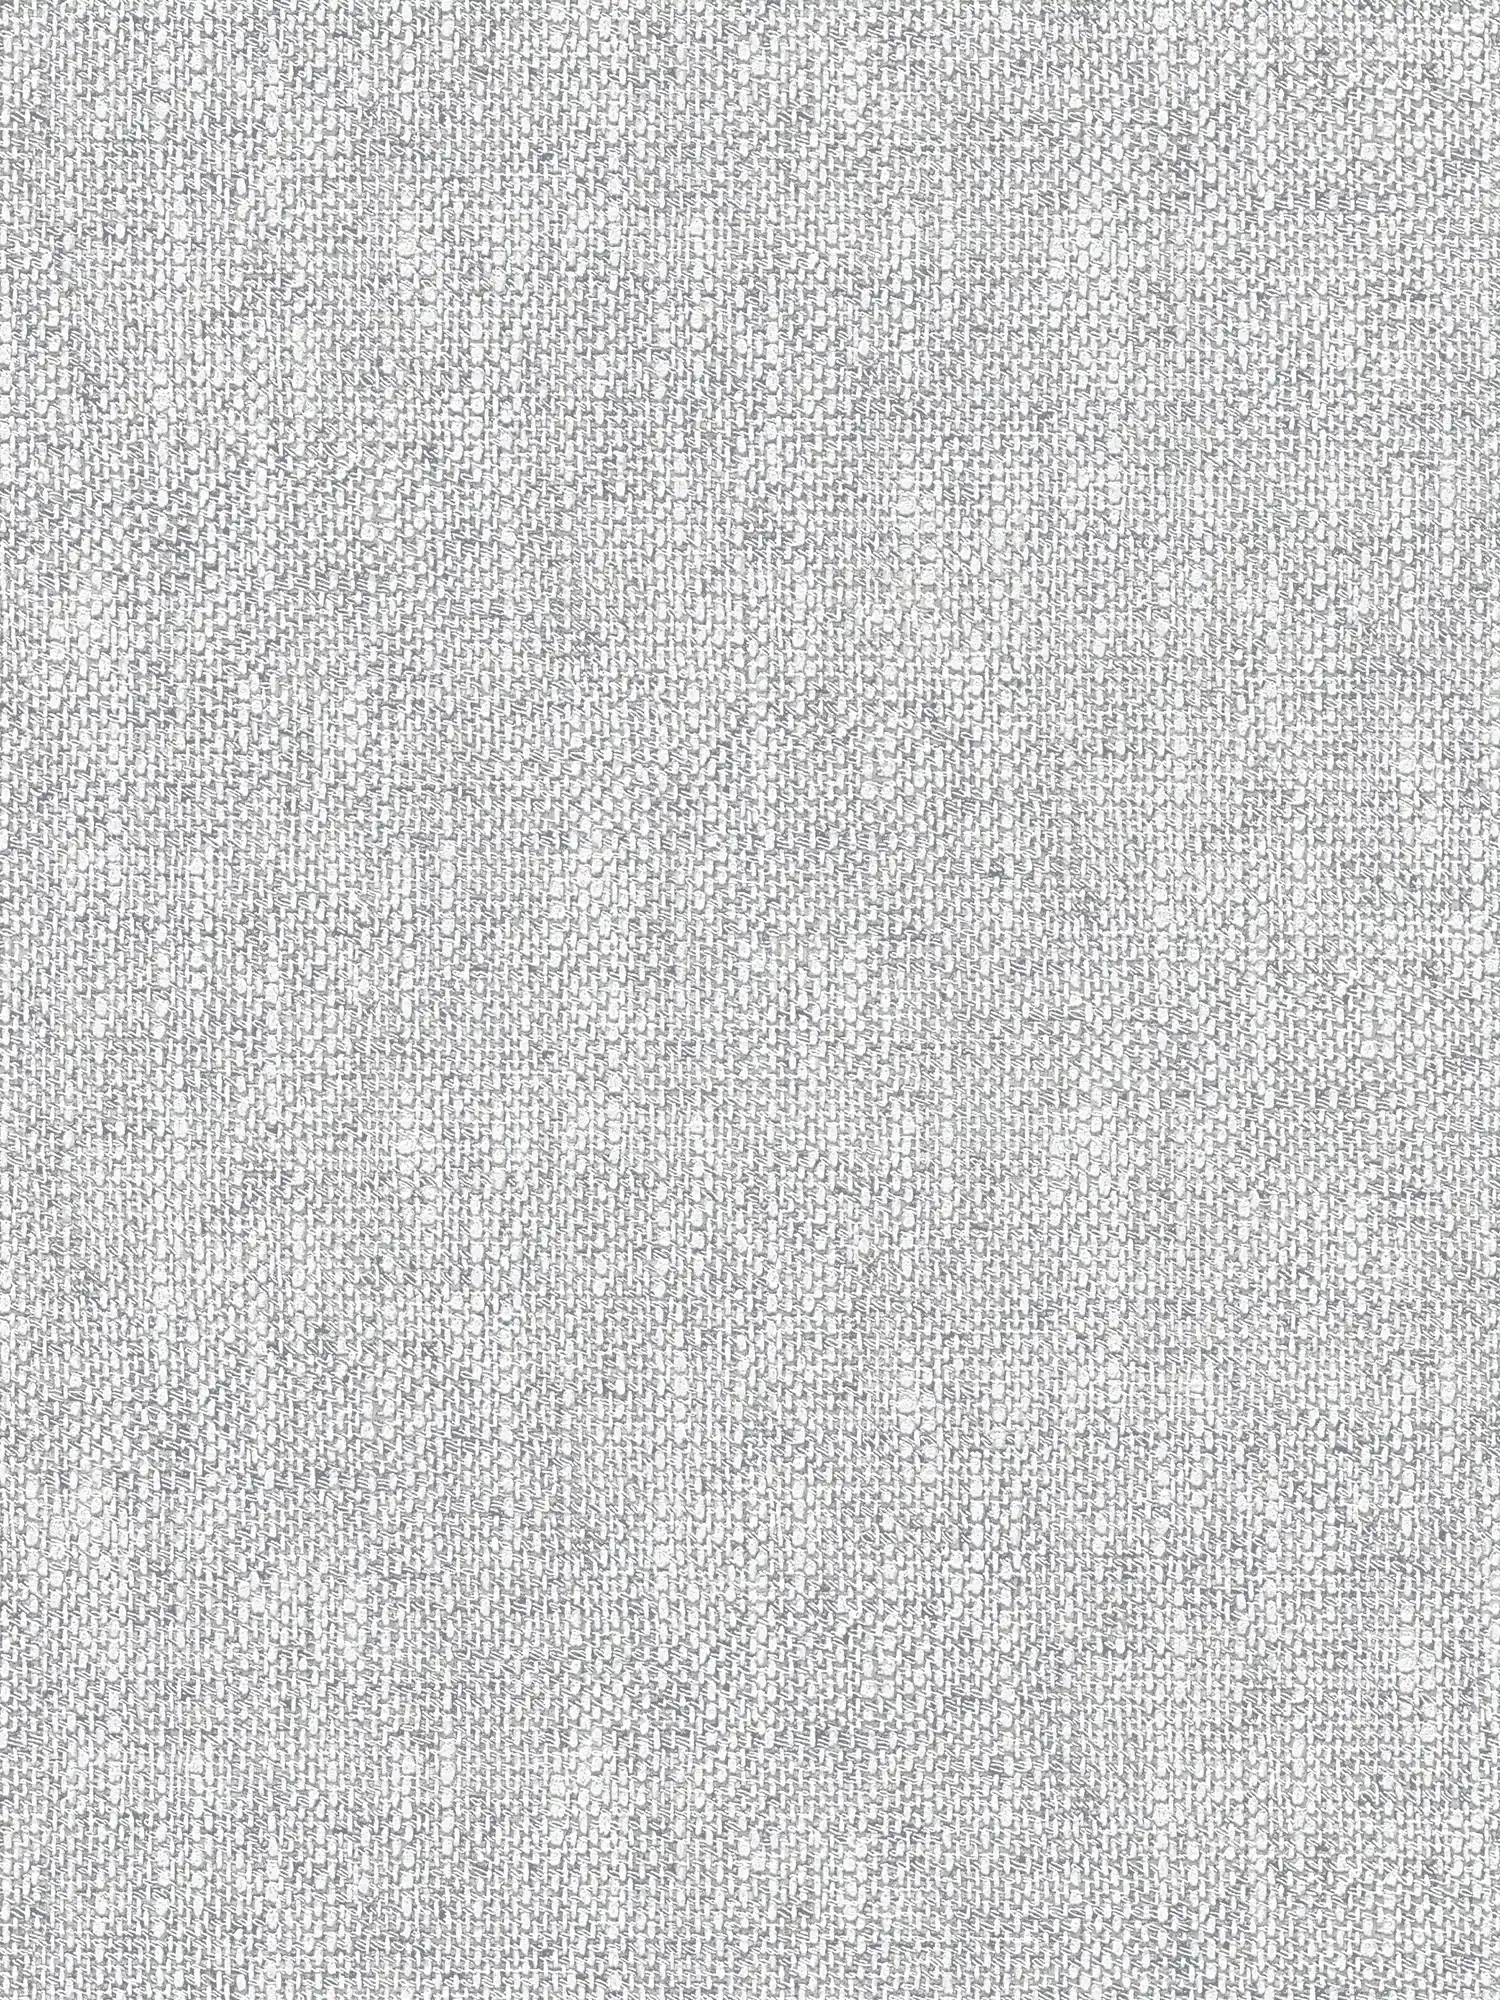 Papier peint intissé avec aspect tissé réaliste - gris, blanc
